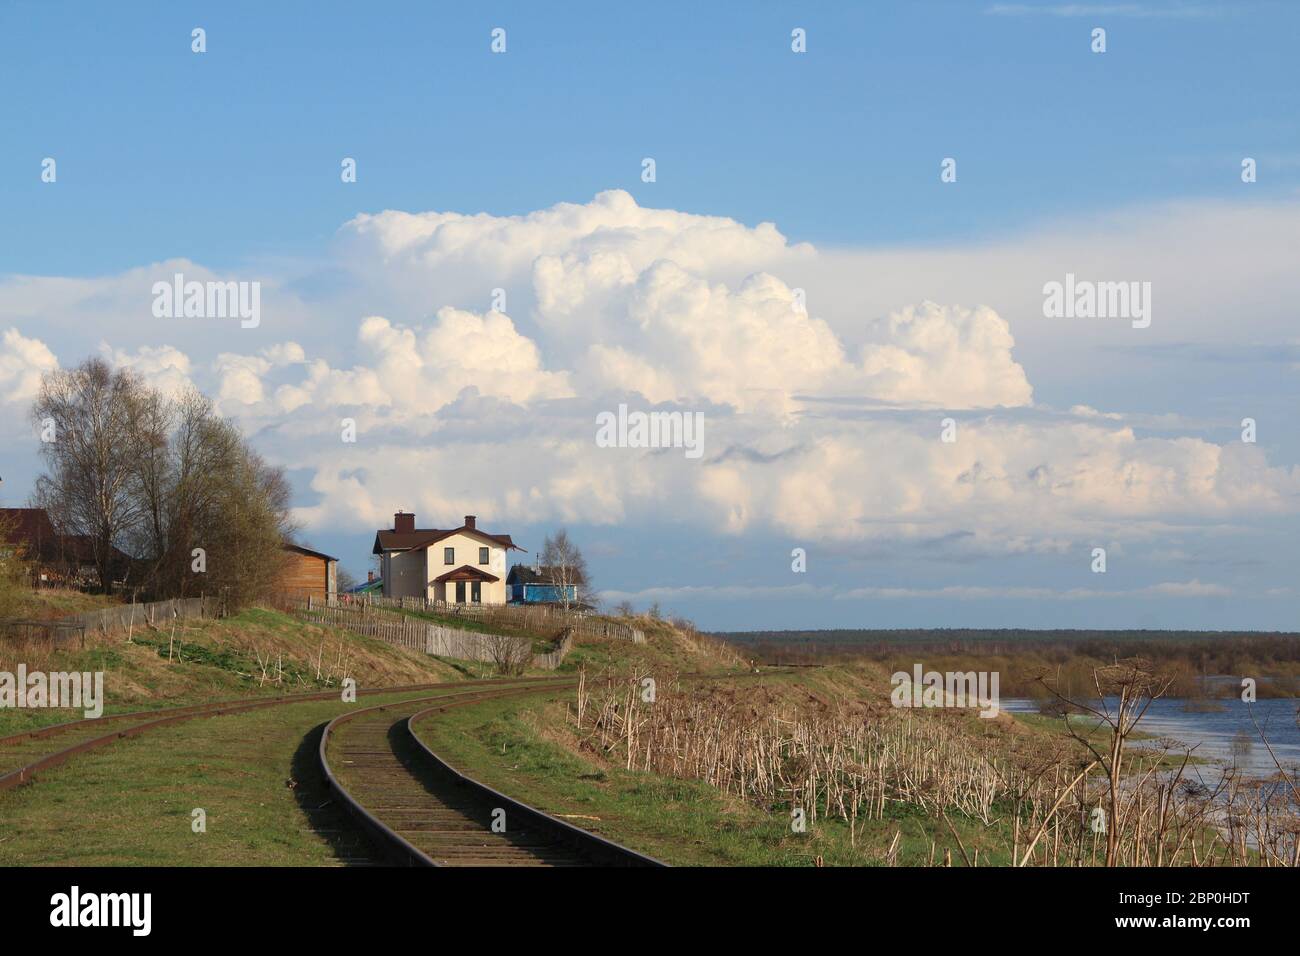 Schöne Landschaft mit dem Horizont und mit einem weißen Haus auf einem Hügel. Landschaft im Frühjahr mit trockenen und jungen grünen Gras. Weiße Cumulus Wolken gegen den blauen Himmel. Ferienhaus am Rande des Dorfes neben der Eisenbahn. Stockfoto